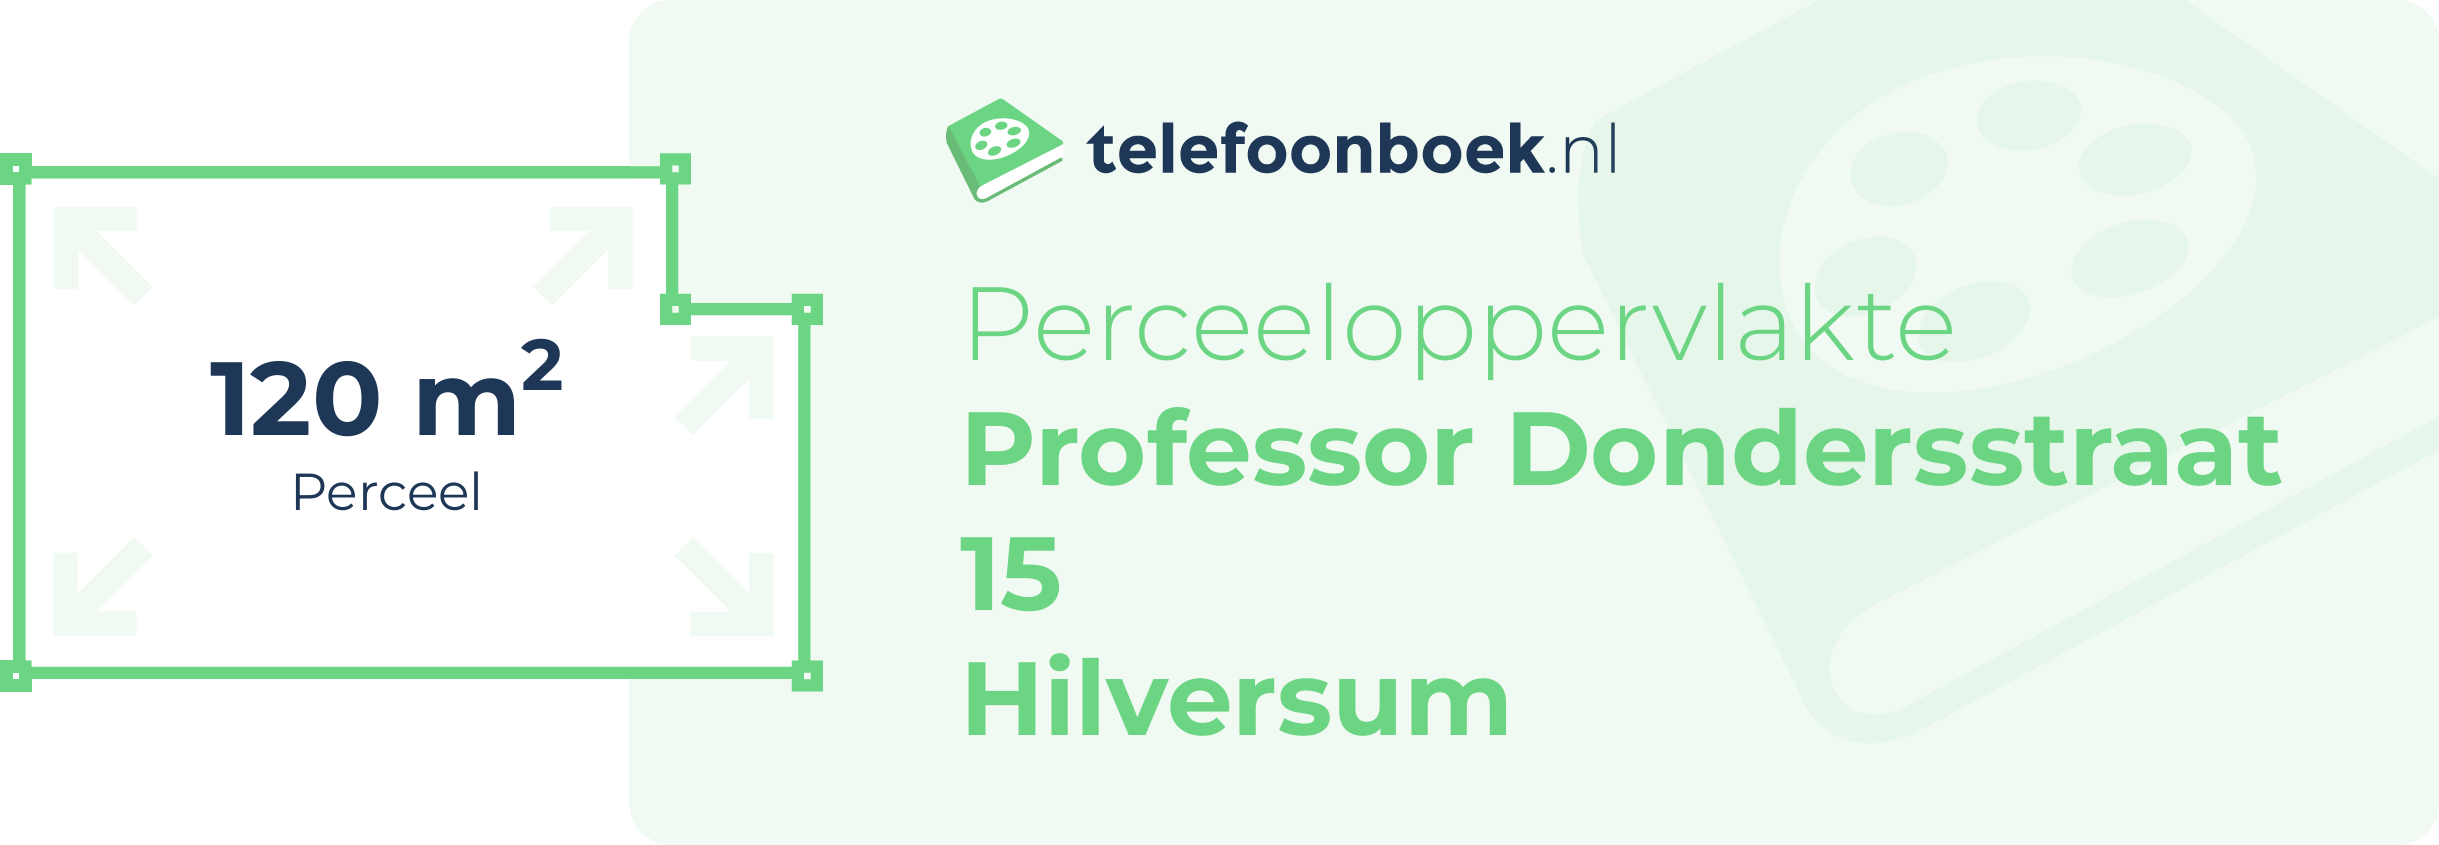 Perceeloppervlakte Professor Dondersstraat 15 Hilversum